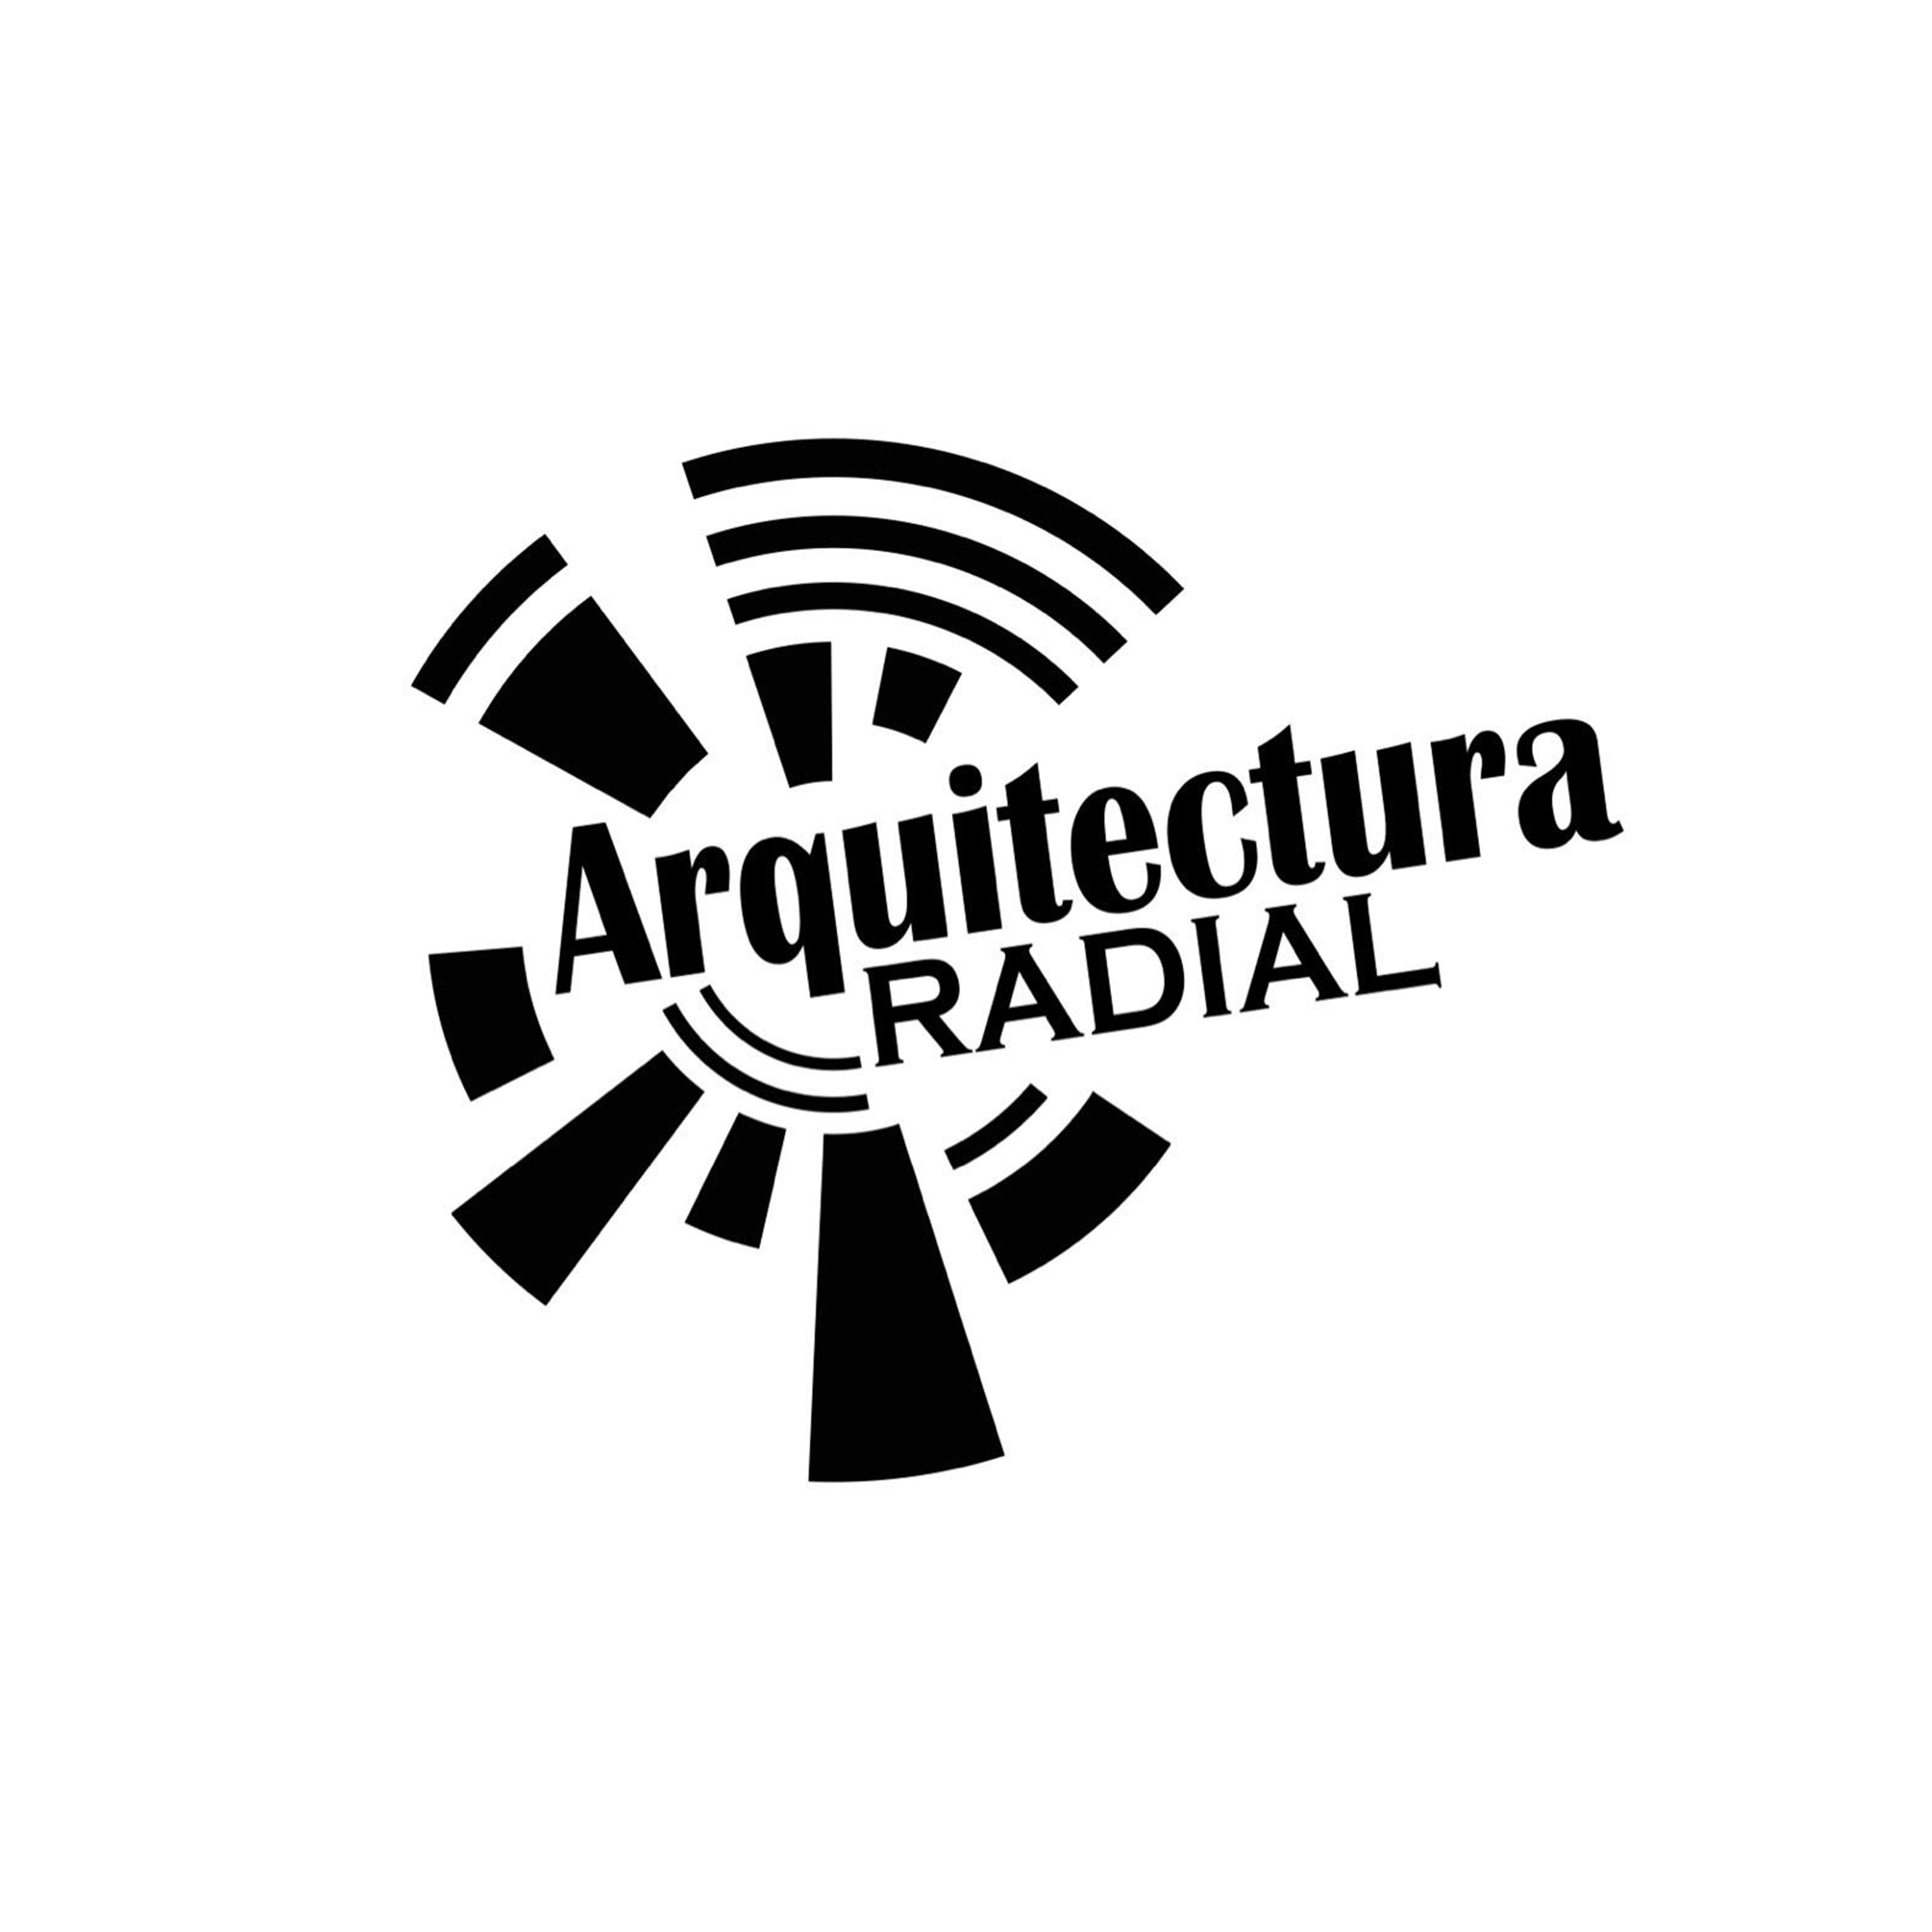 ARQUITECTURA RADIAL - DOMINGO JUNIO 6 2021